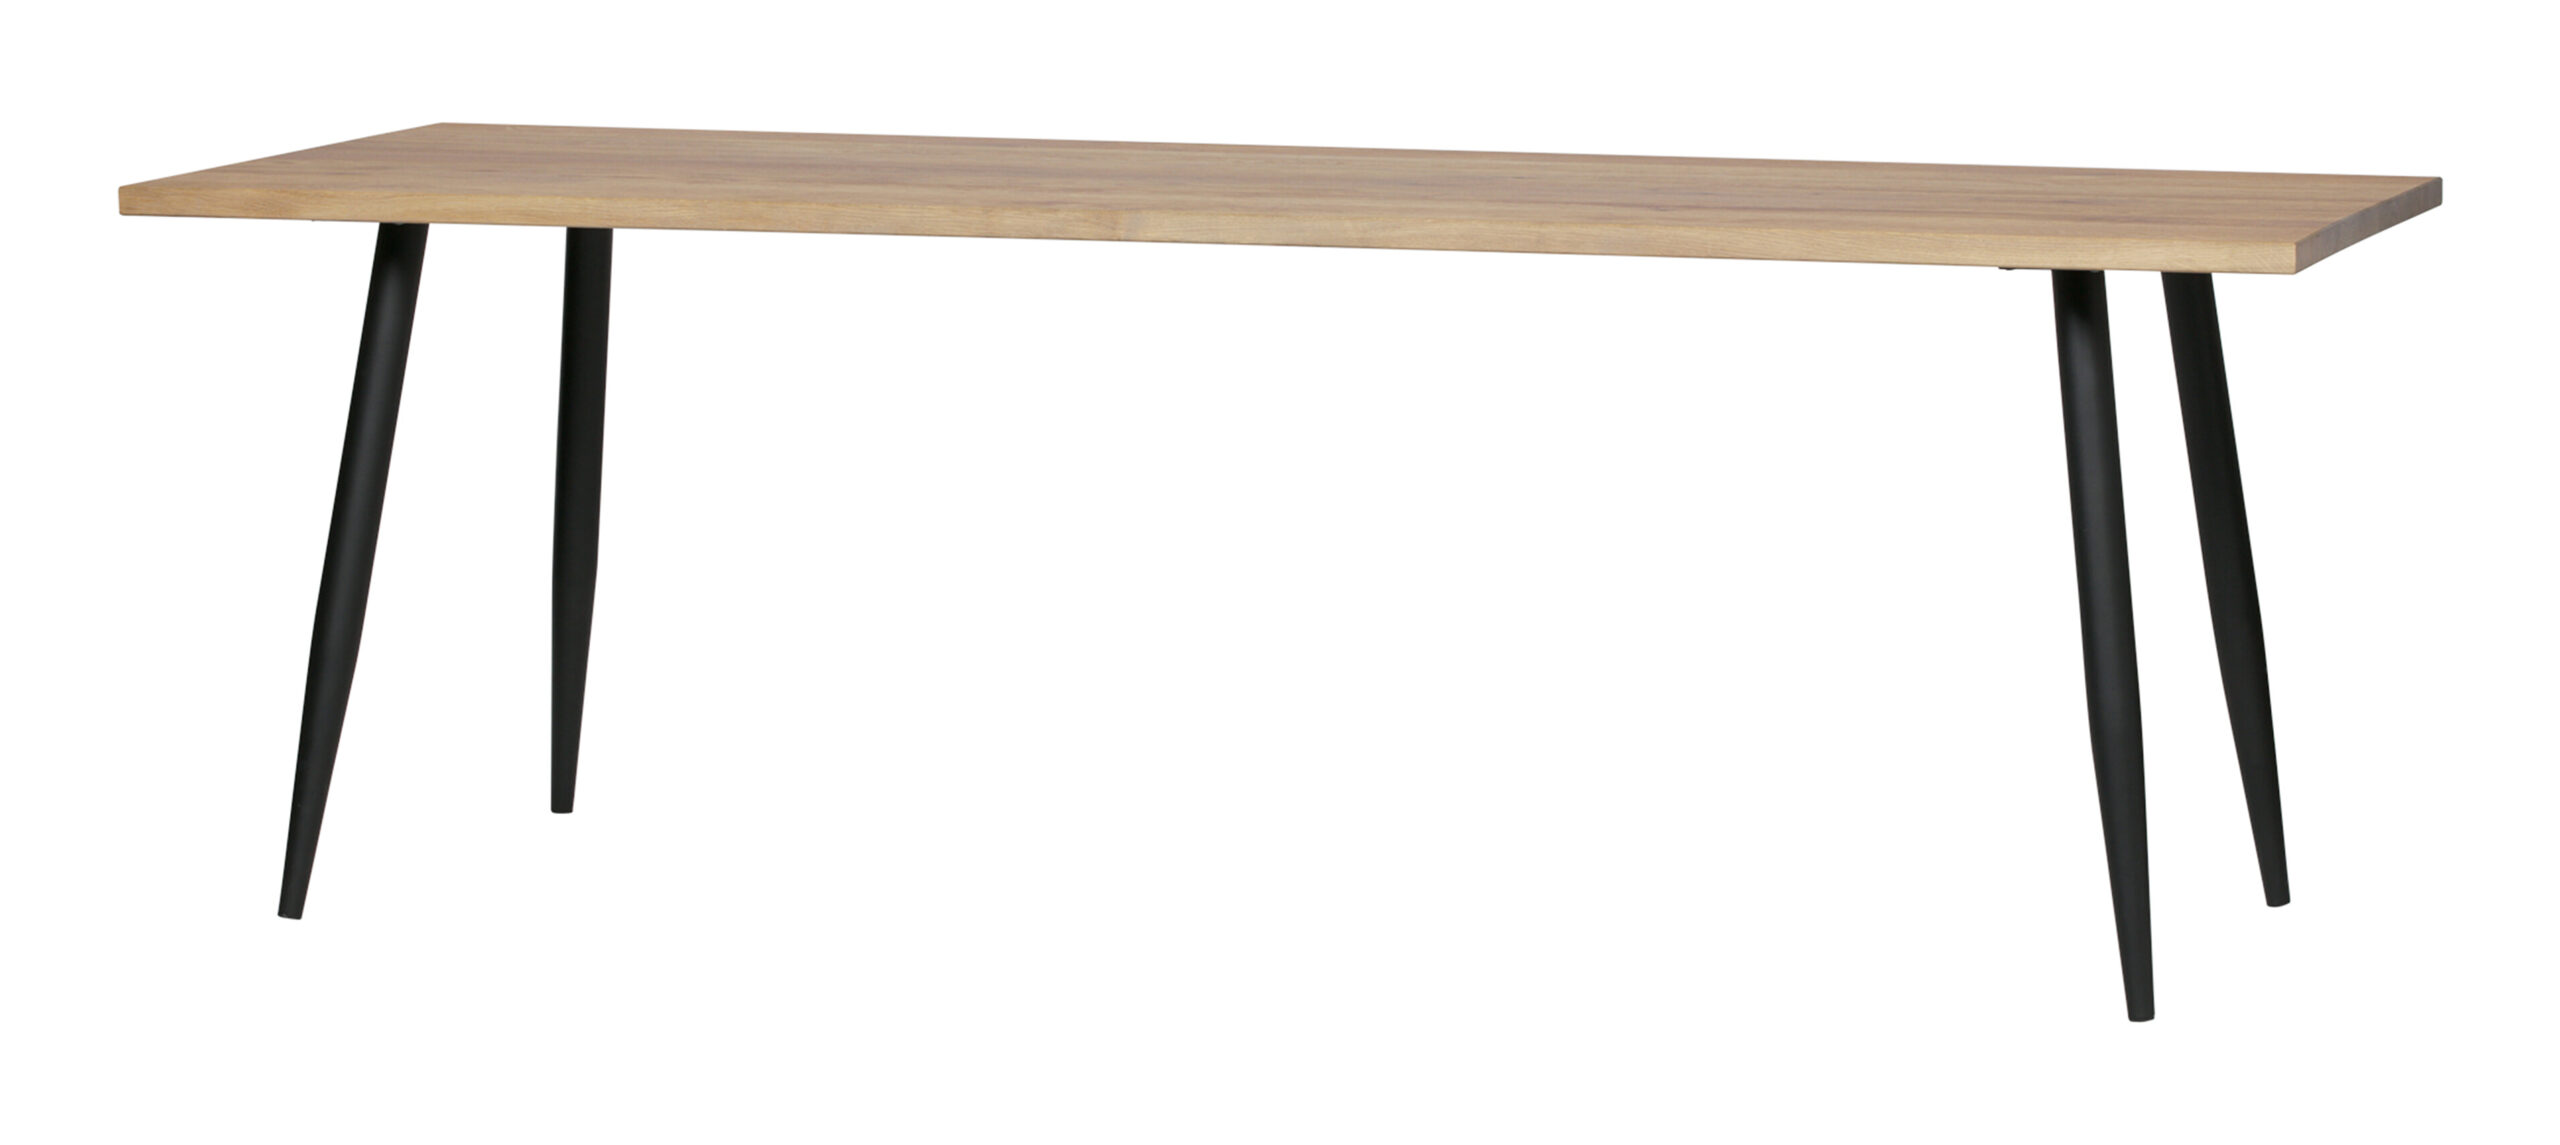 Konijn Vermenigvuldiging omringen vtwonen Eettafel 'Panel' 220 x 80cm, kleur Eiken - Woonaanraders